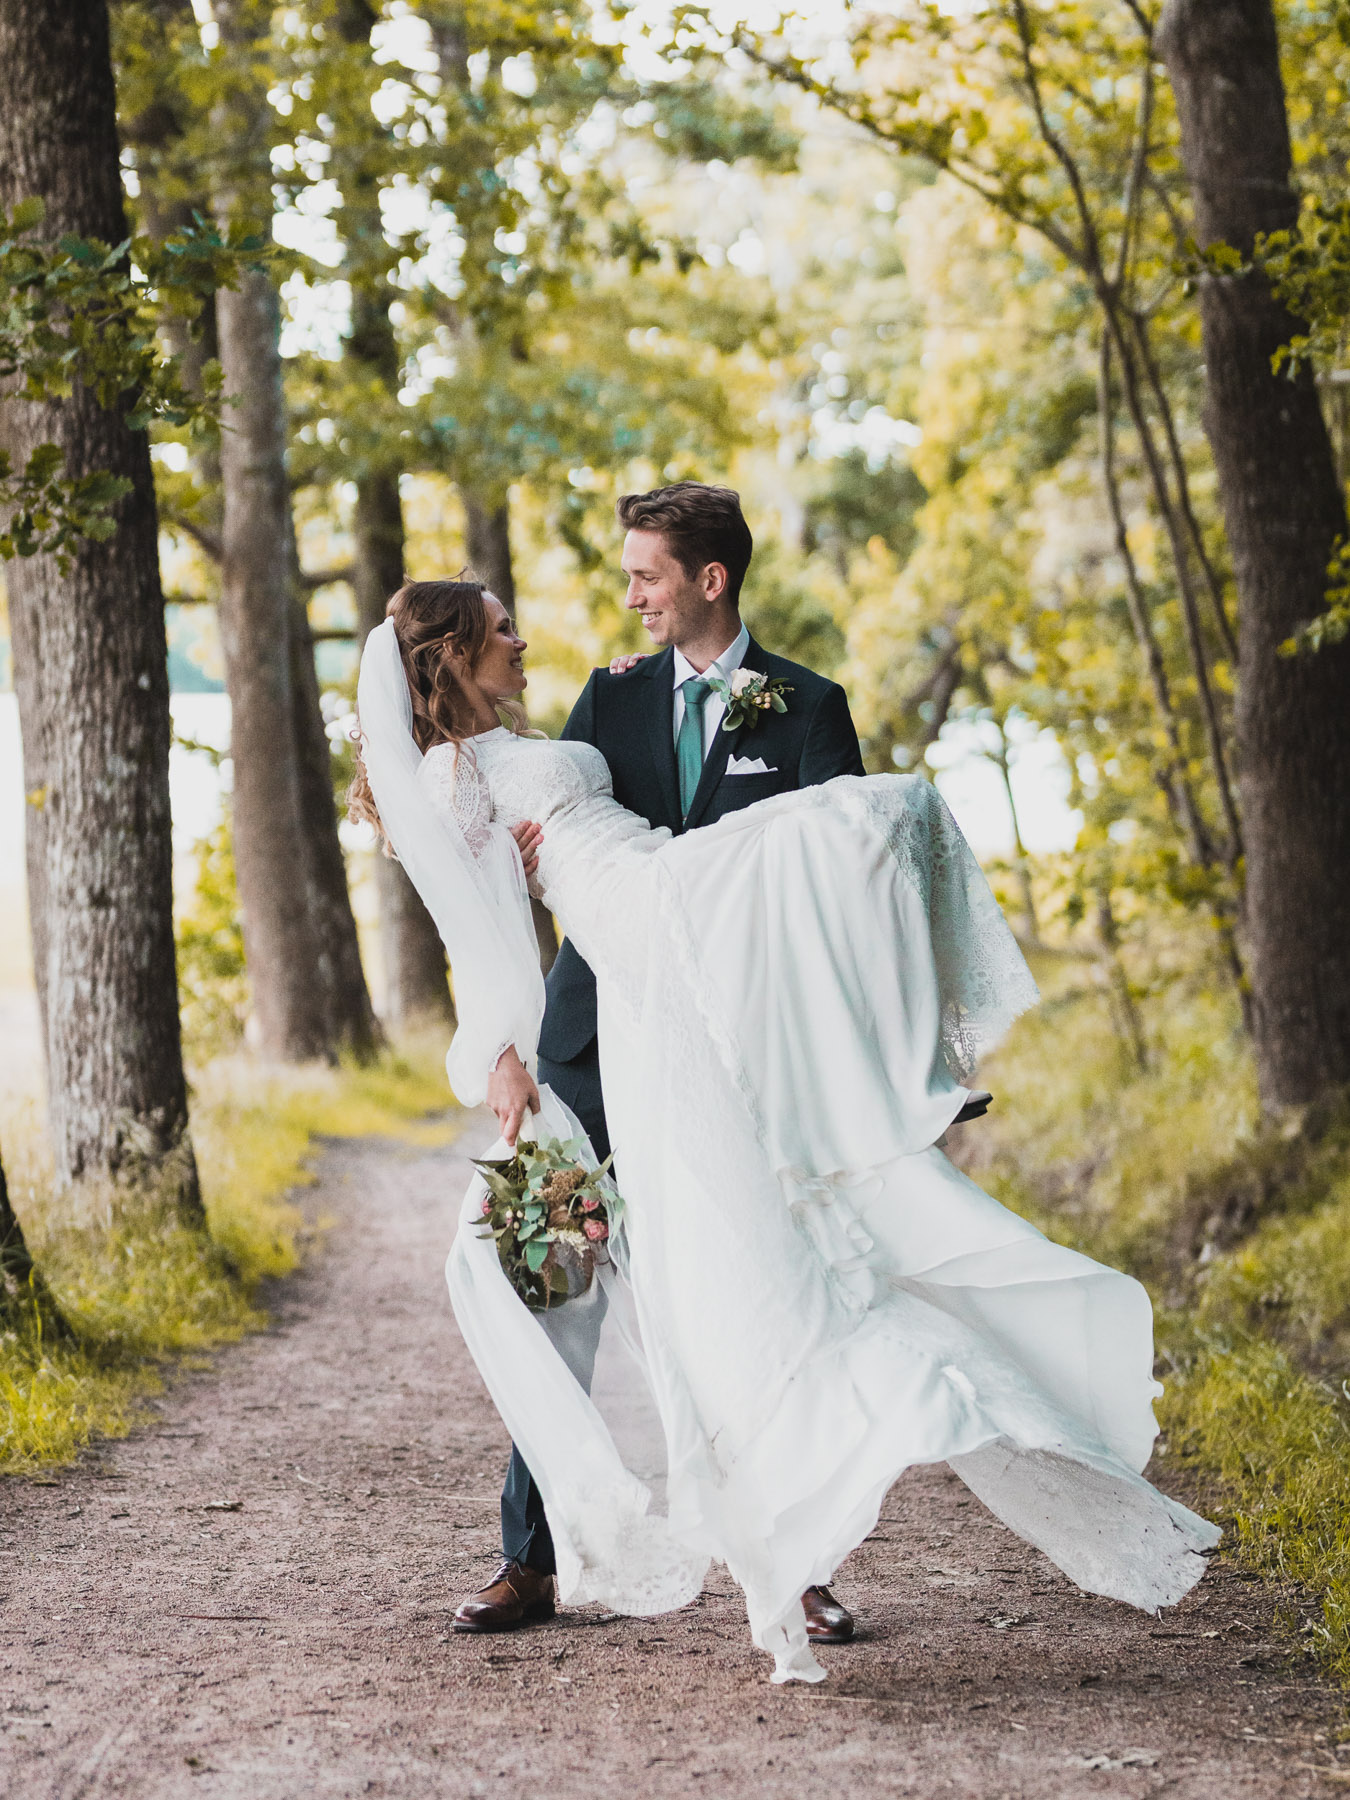 professional_wedding_photographer_gothenburg_sweden_matiss_neimans-10